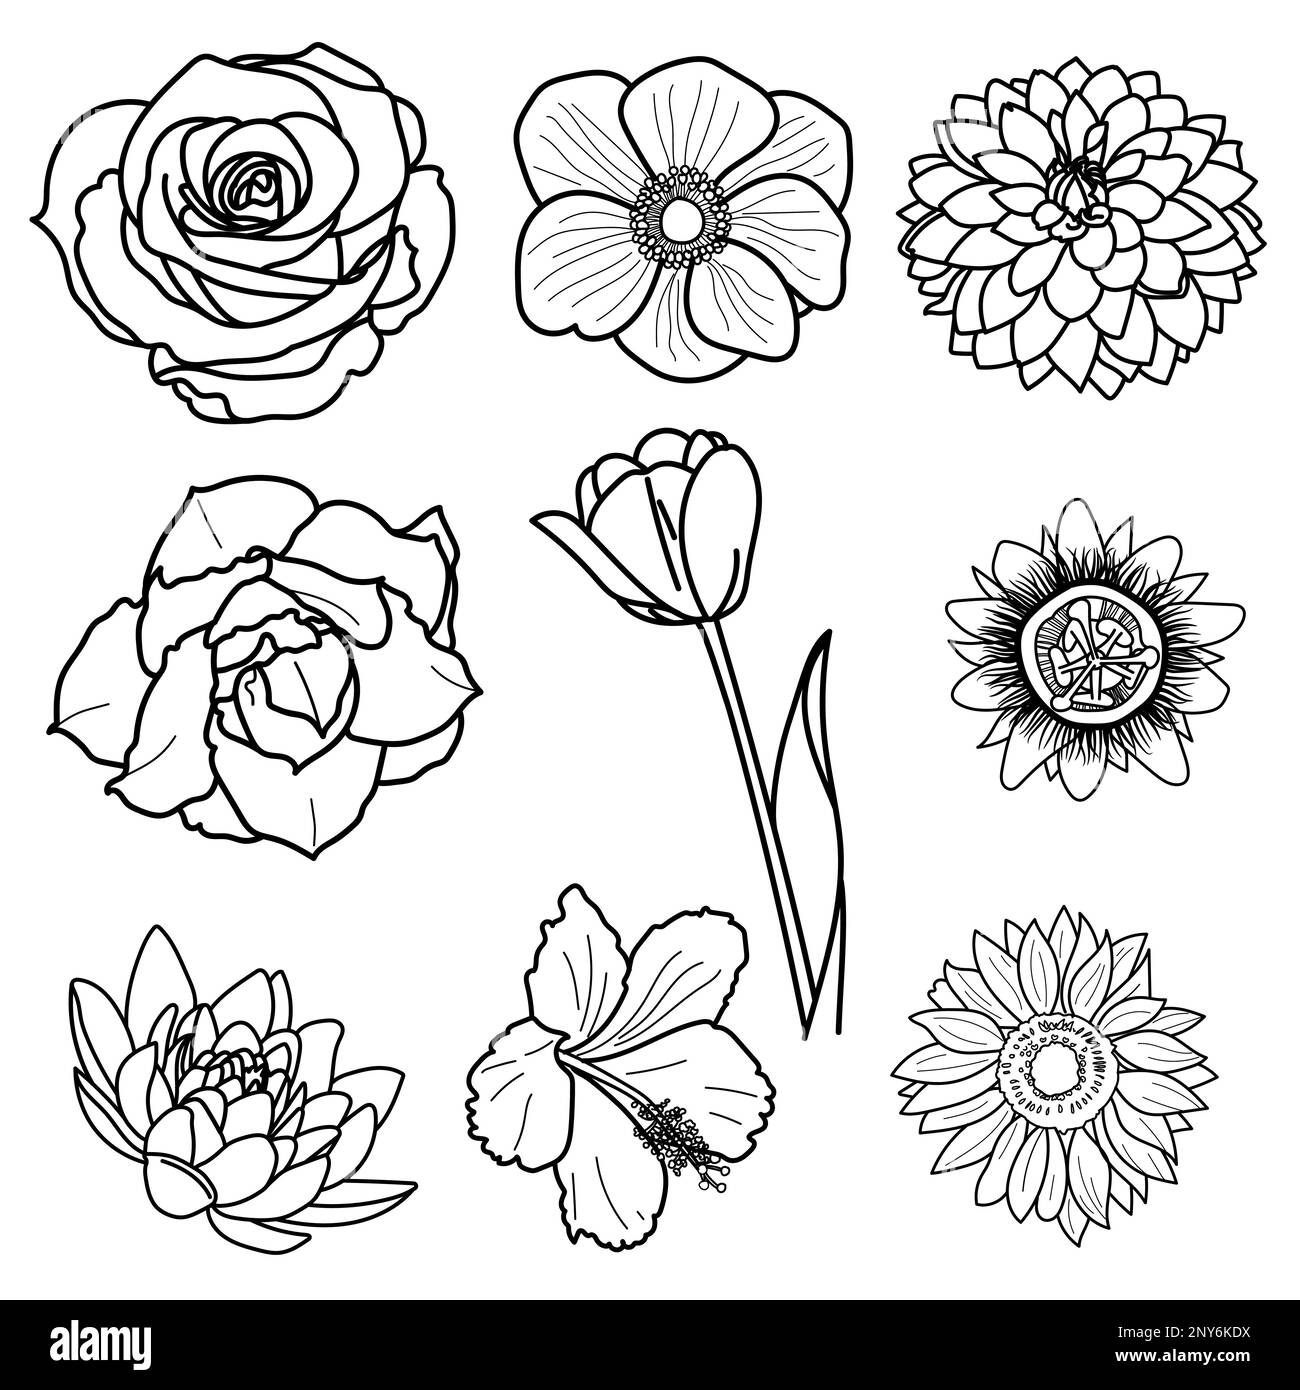 Dessin d'un bouquet de fleurs, isolé sur une illustration vectorielle blanche. Illustration de Vecteur